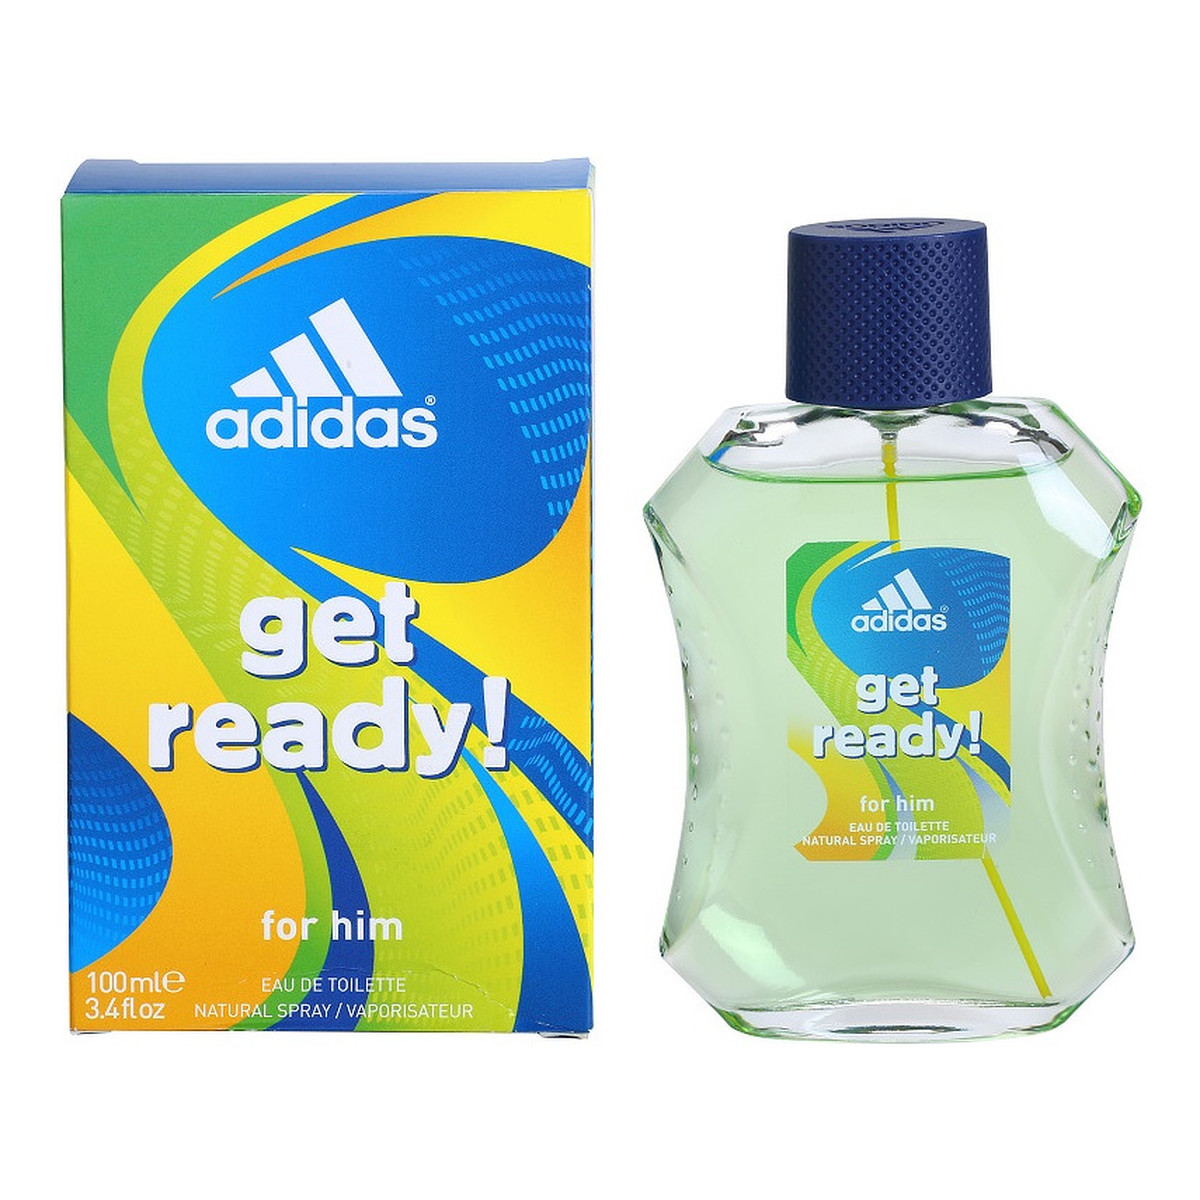 Adidas Get Ready woda toaletowa dla mężczyzn 100ml